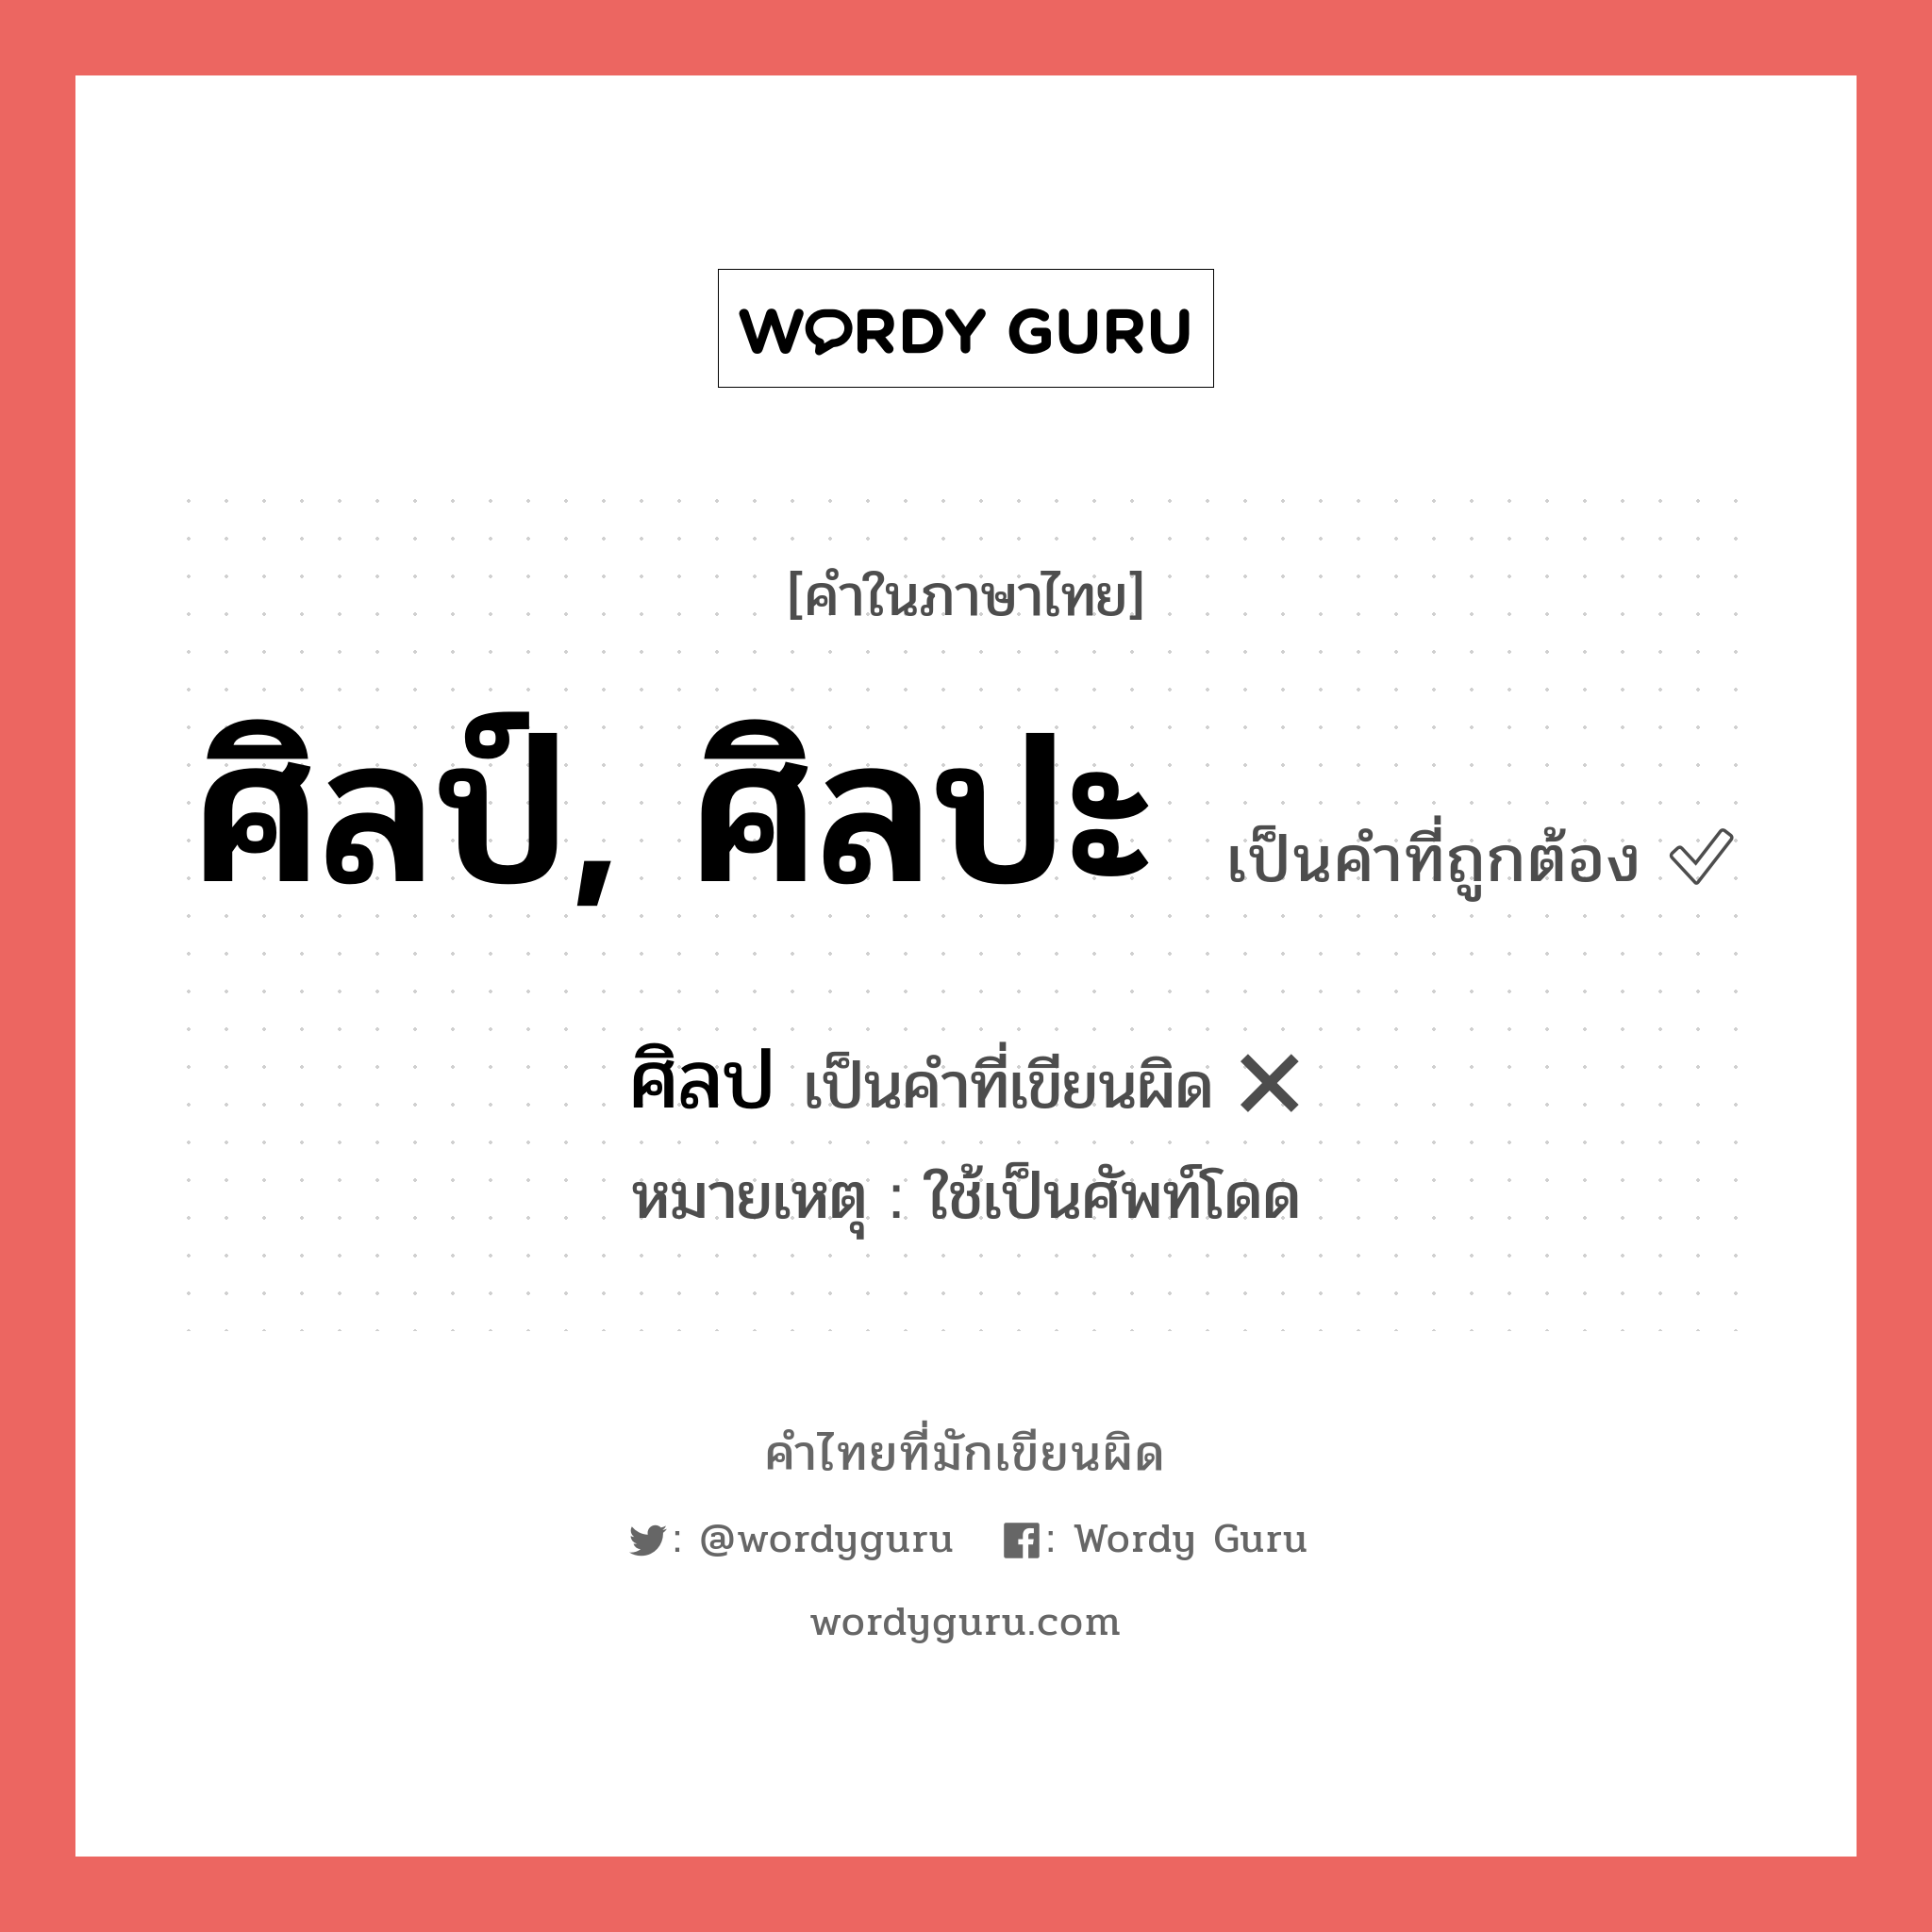 ศิลป หรือ ศิลป์, ศิลปะ คำไหนเขียนถูก?, คำในภาษาไทยที่มักเขียนผิด ศิลป คำที่ผิด ❌ ศิลป์, ศิลปะ หมายเหตุ ใช้เป็นศัพท์โดด